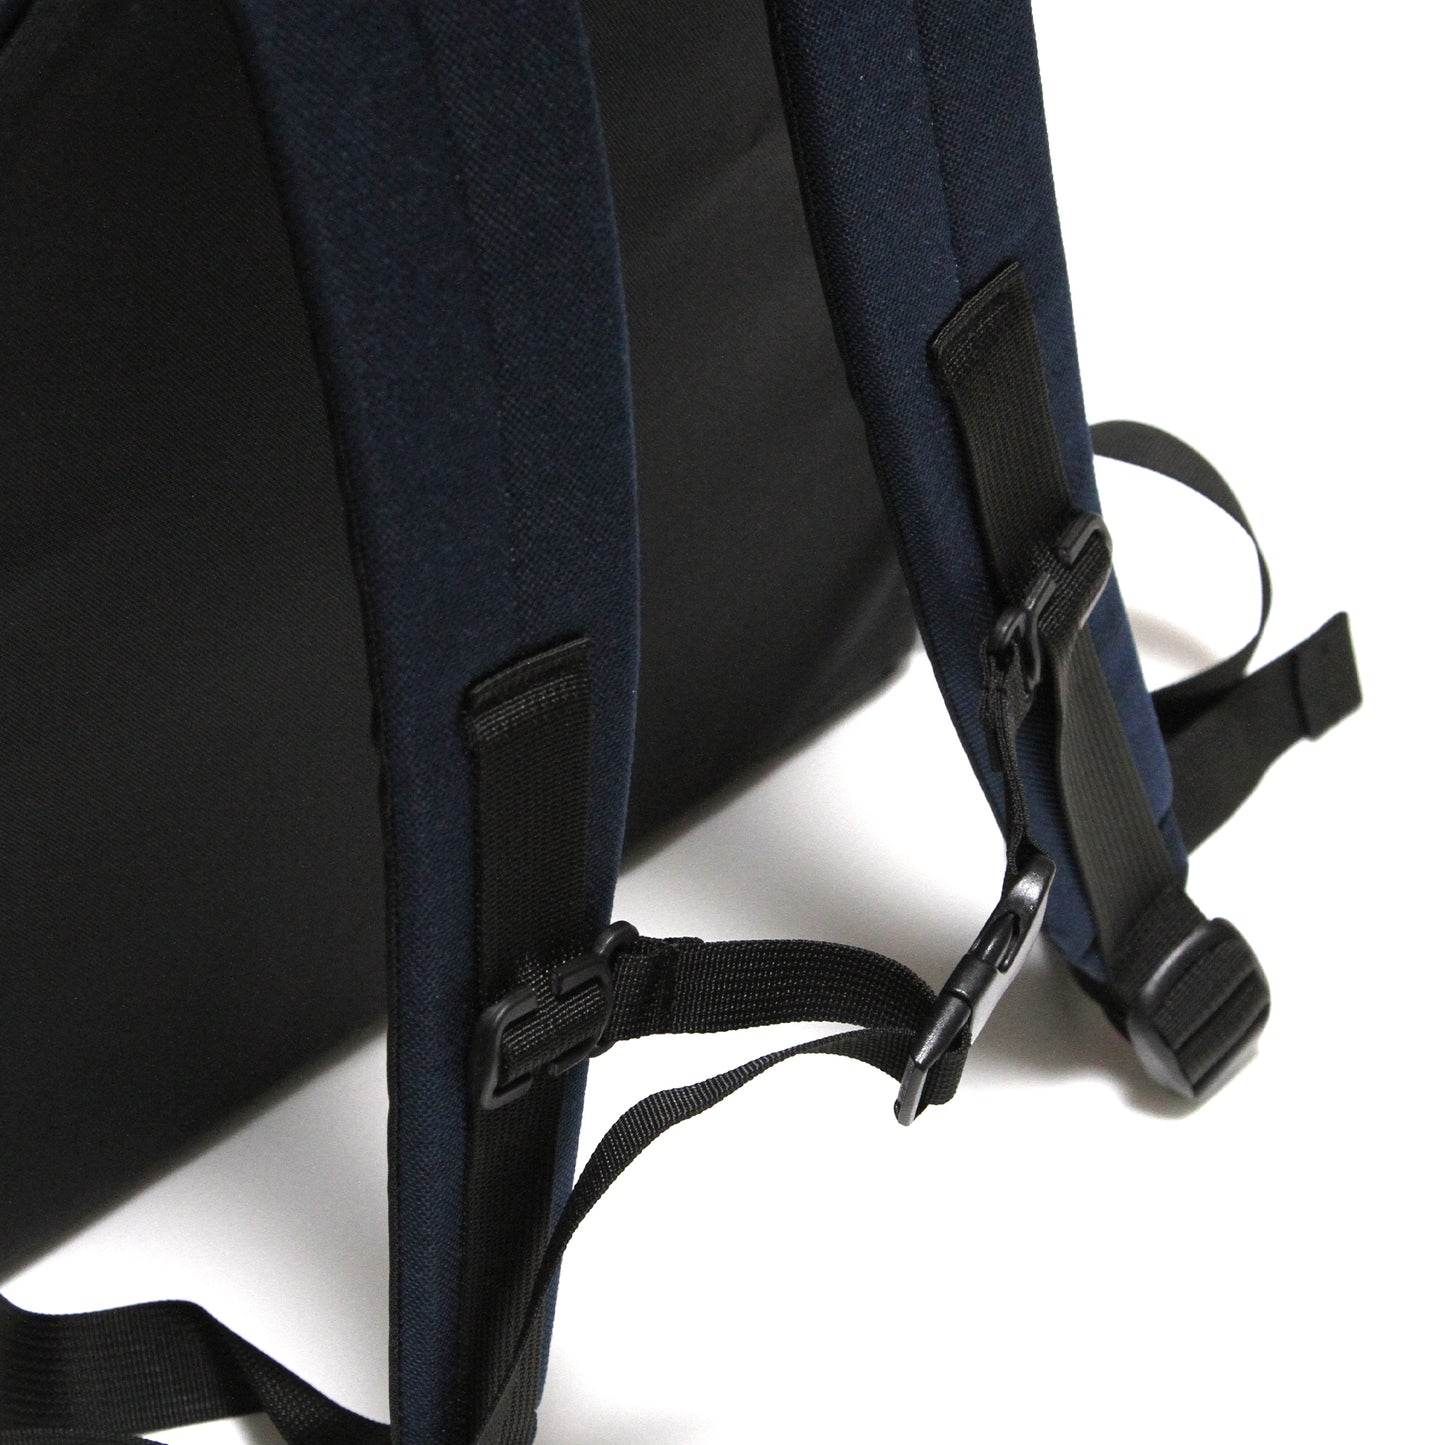 MOTO-BUNKA X AGHARTA - MB Backpack/2 Tone Blue